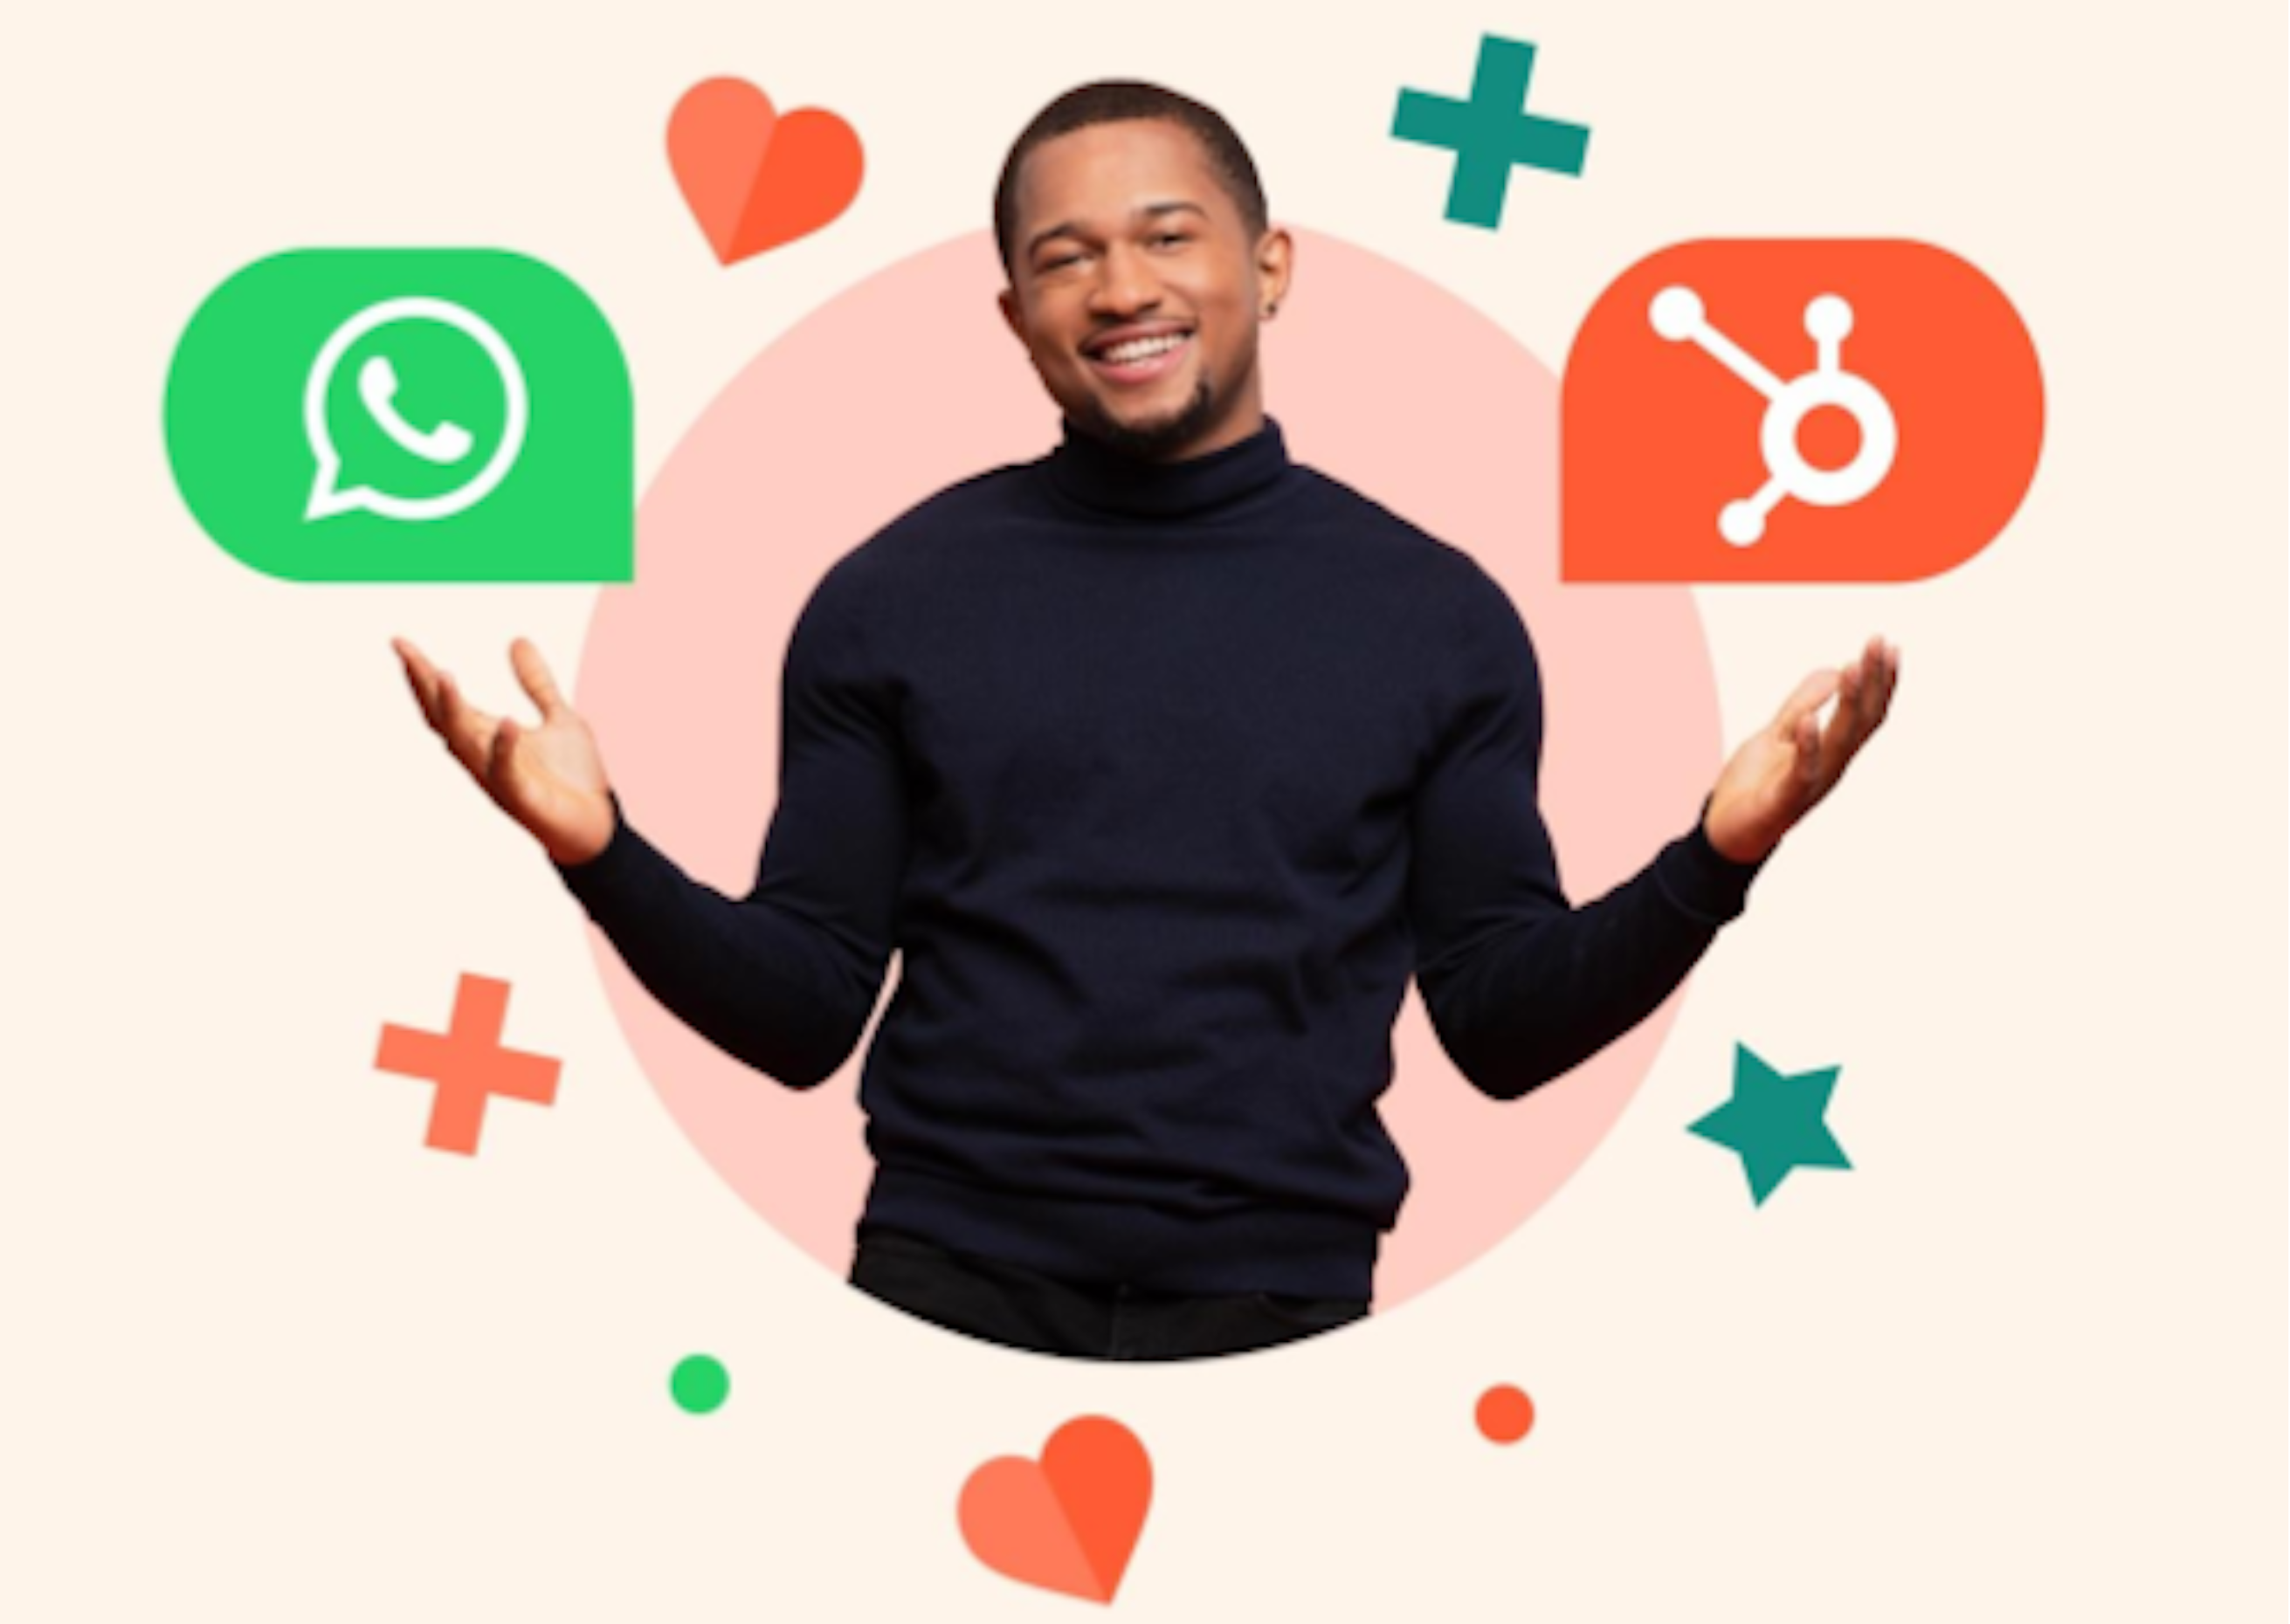 HubSpot anuncia que sua integração com o WhatsApp está disponível para ajudar os clientes a formar conexões profundas